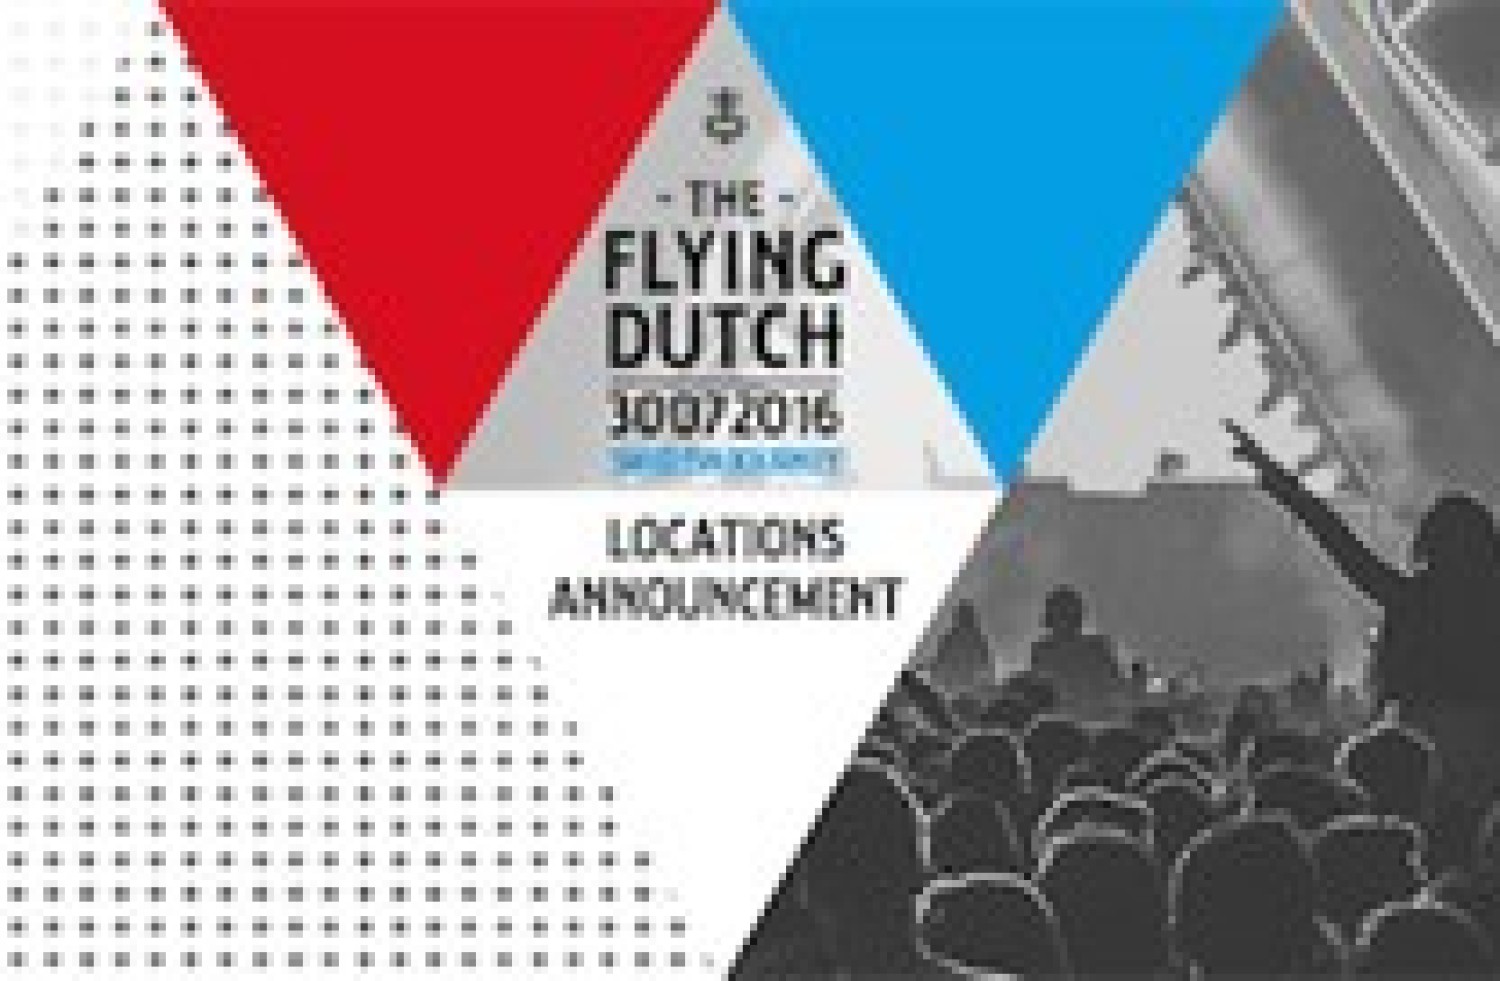 Party nieuws: The Flying Dutch 2016 maakt locaties bekend!